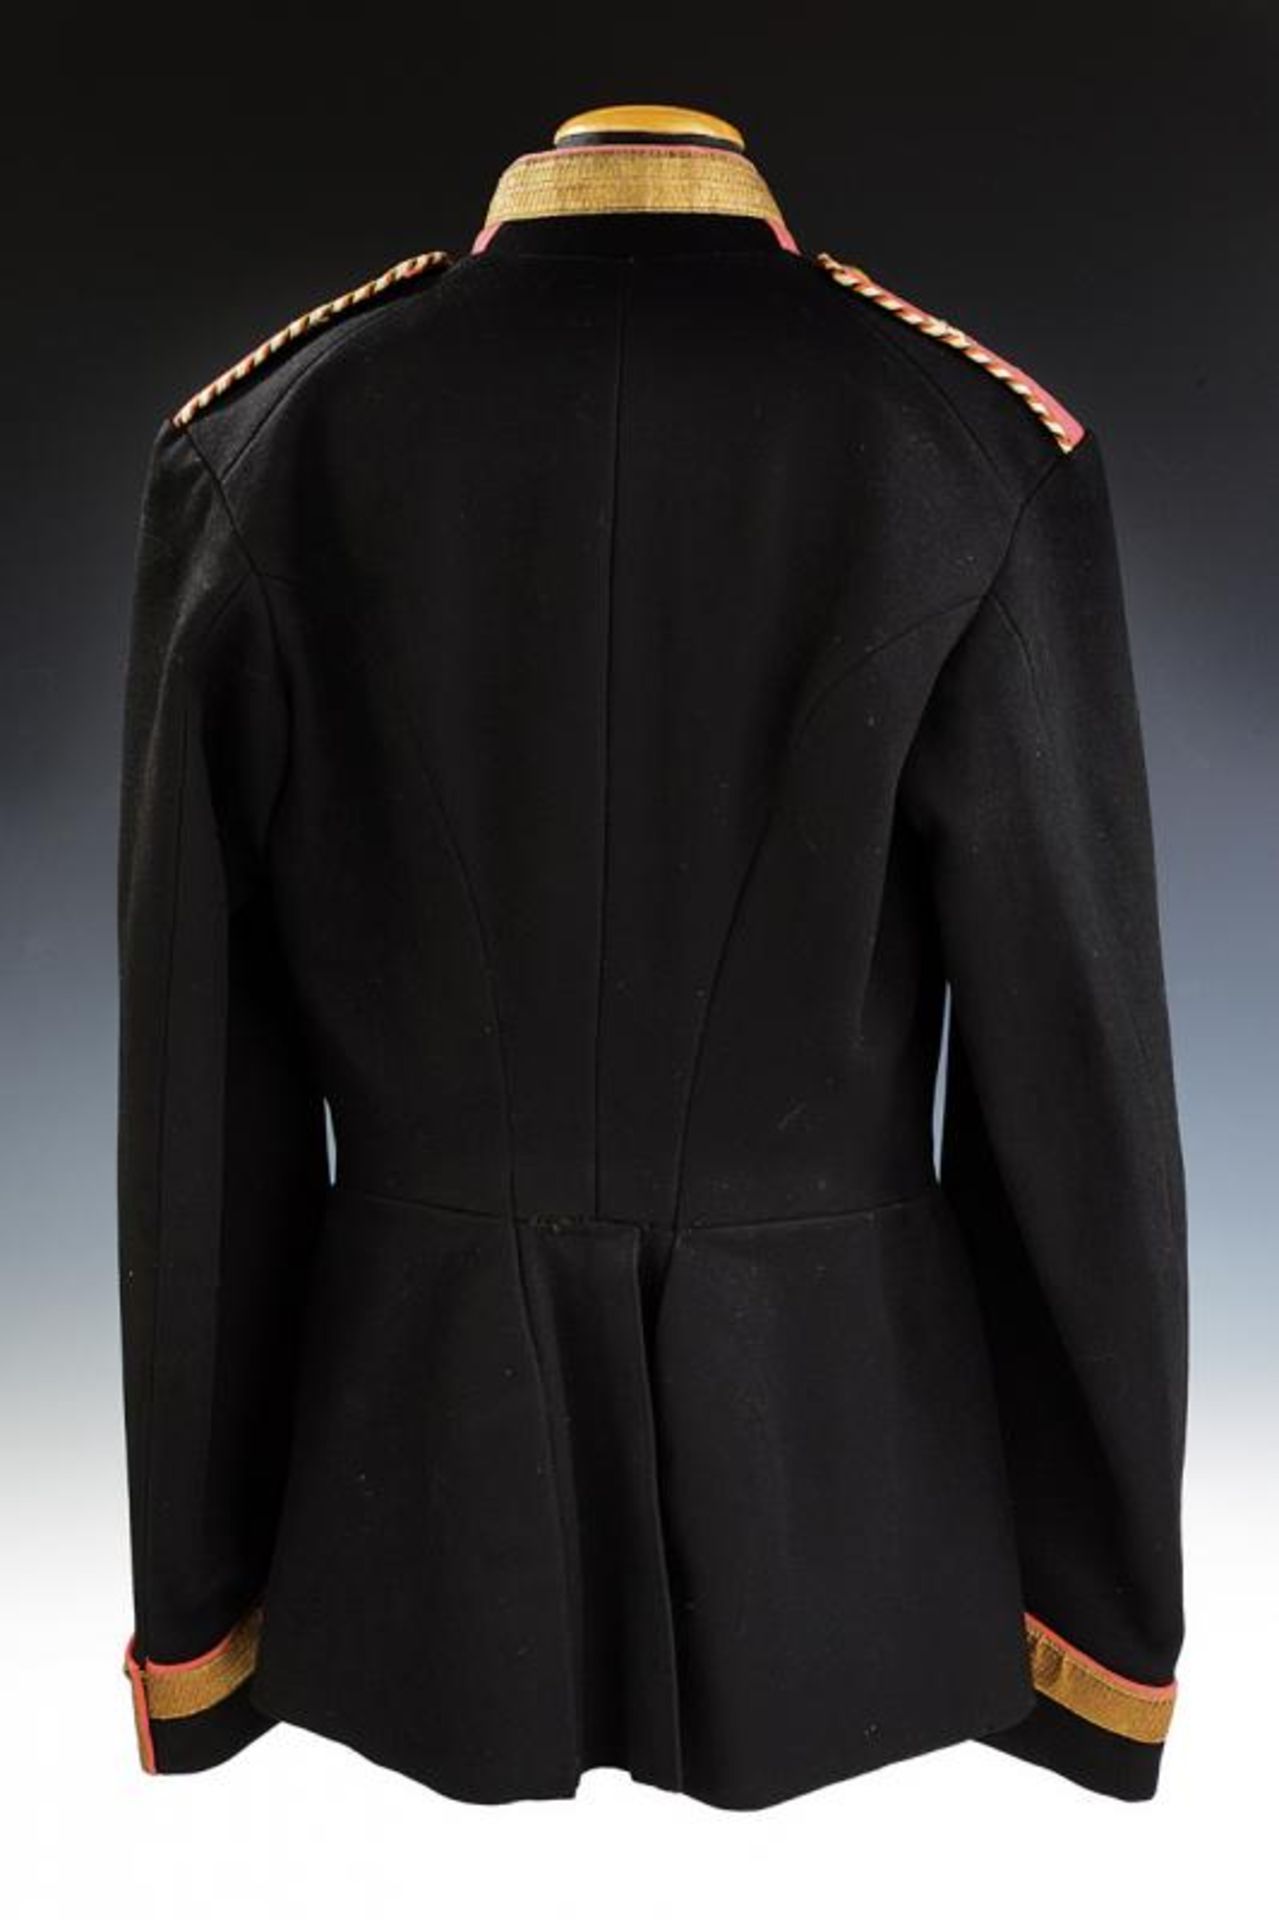 A NC-officer's uniform - Bild 5 aus 5